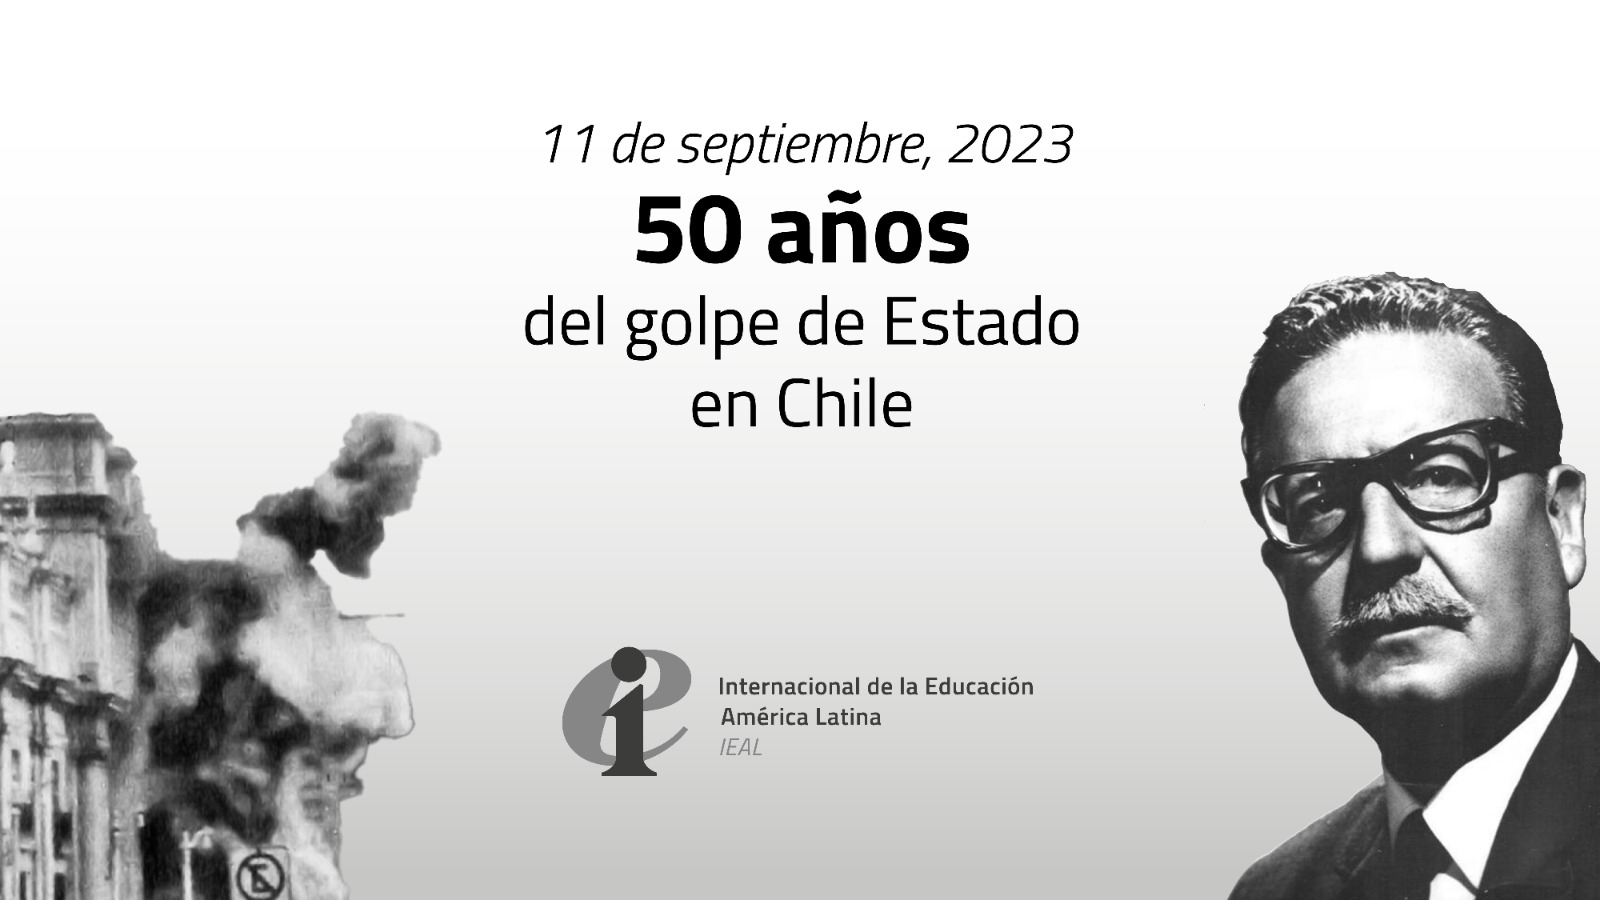 50 años del golpe de Estado en Chile - Internacional de la Educación América Latina. 